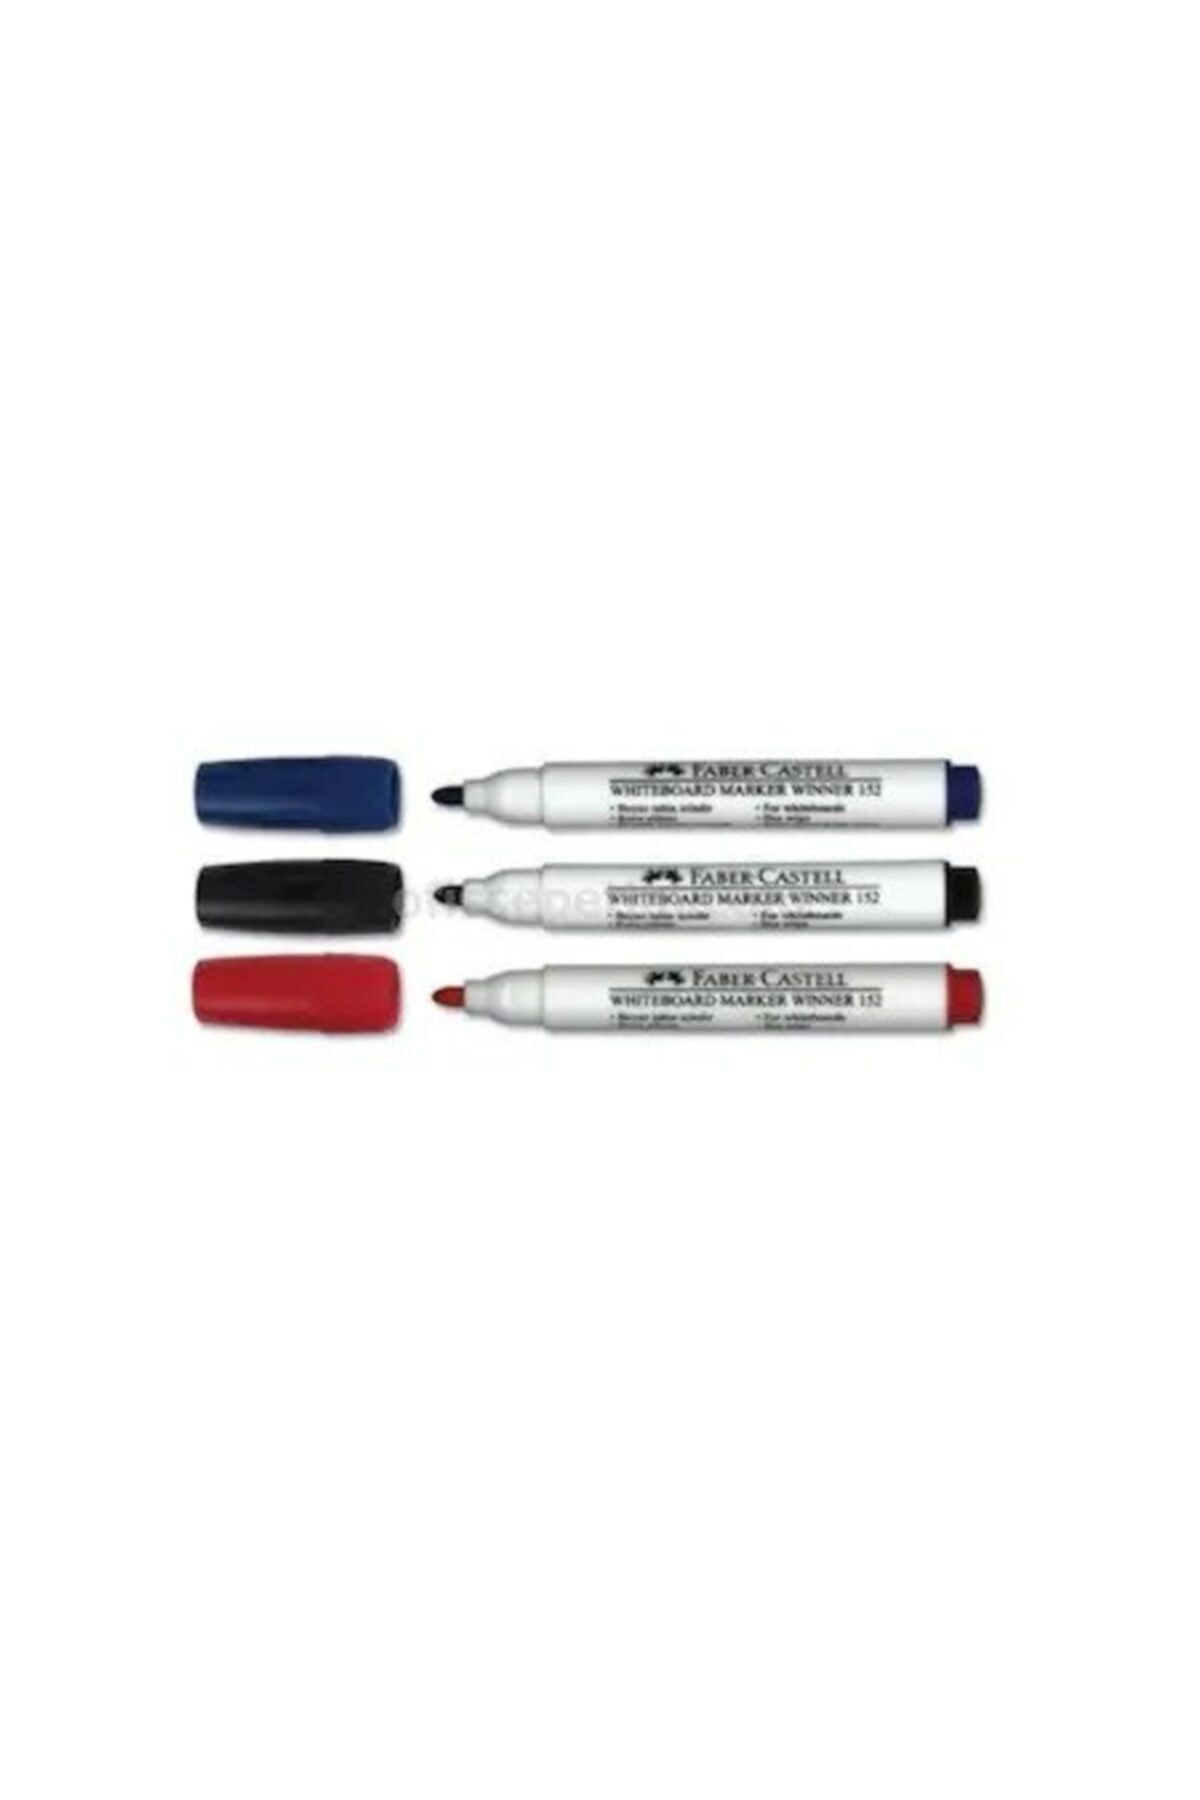 Faber Castell Doldurulabilir Beyaz Tahta Kalemi 3 Renk Siyah Kırmızı Mavi